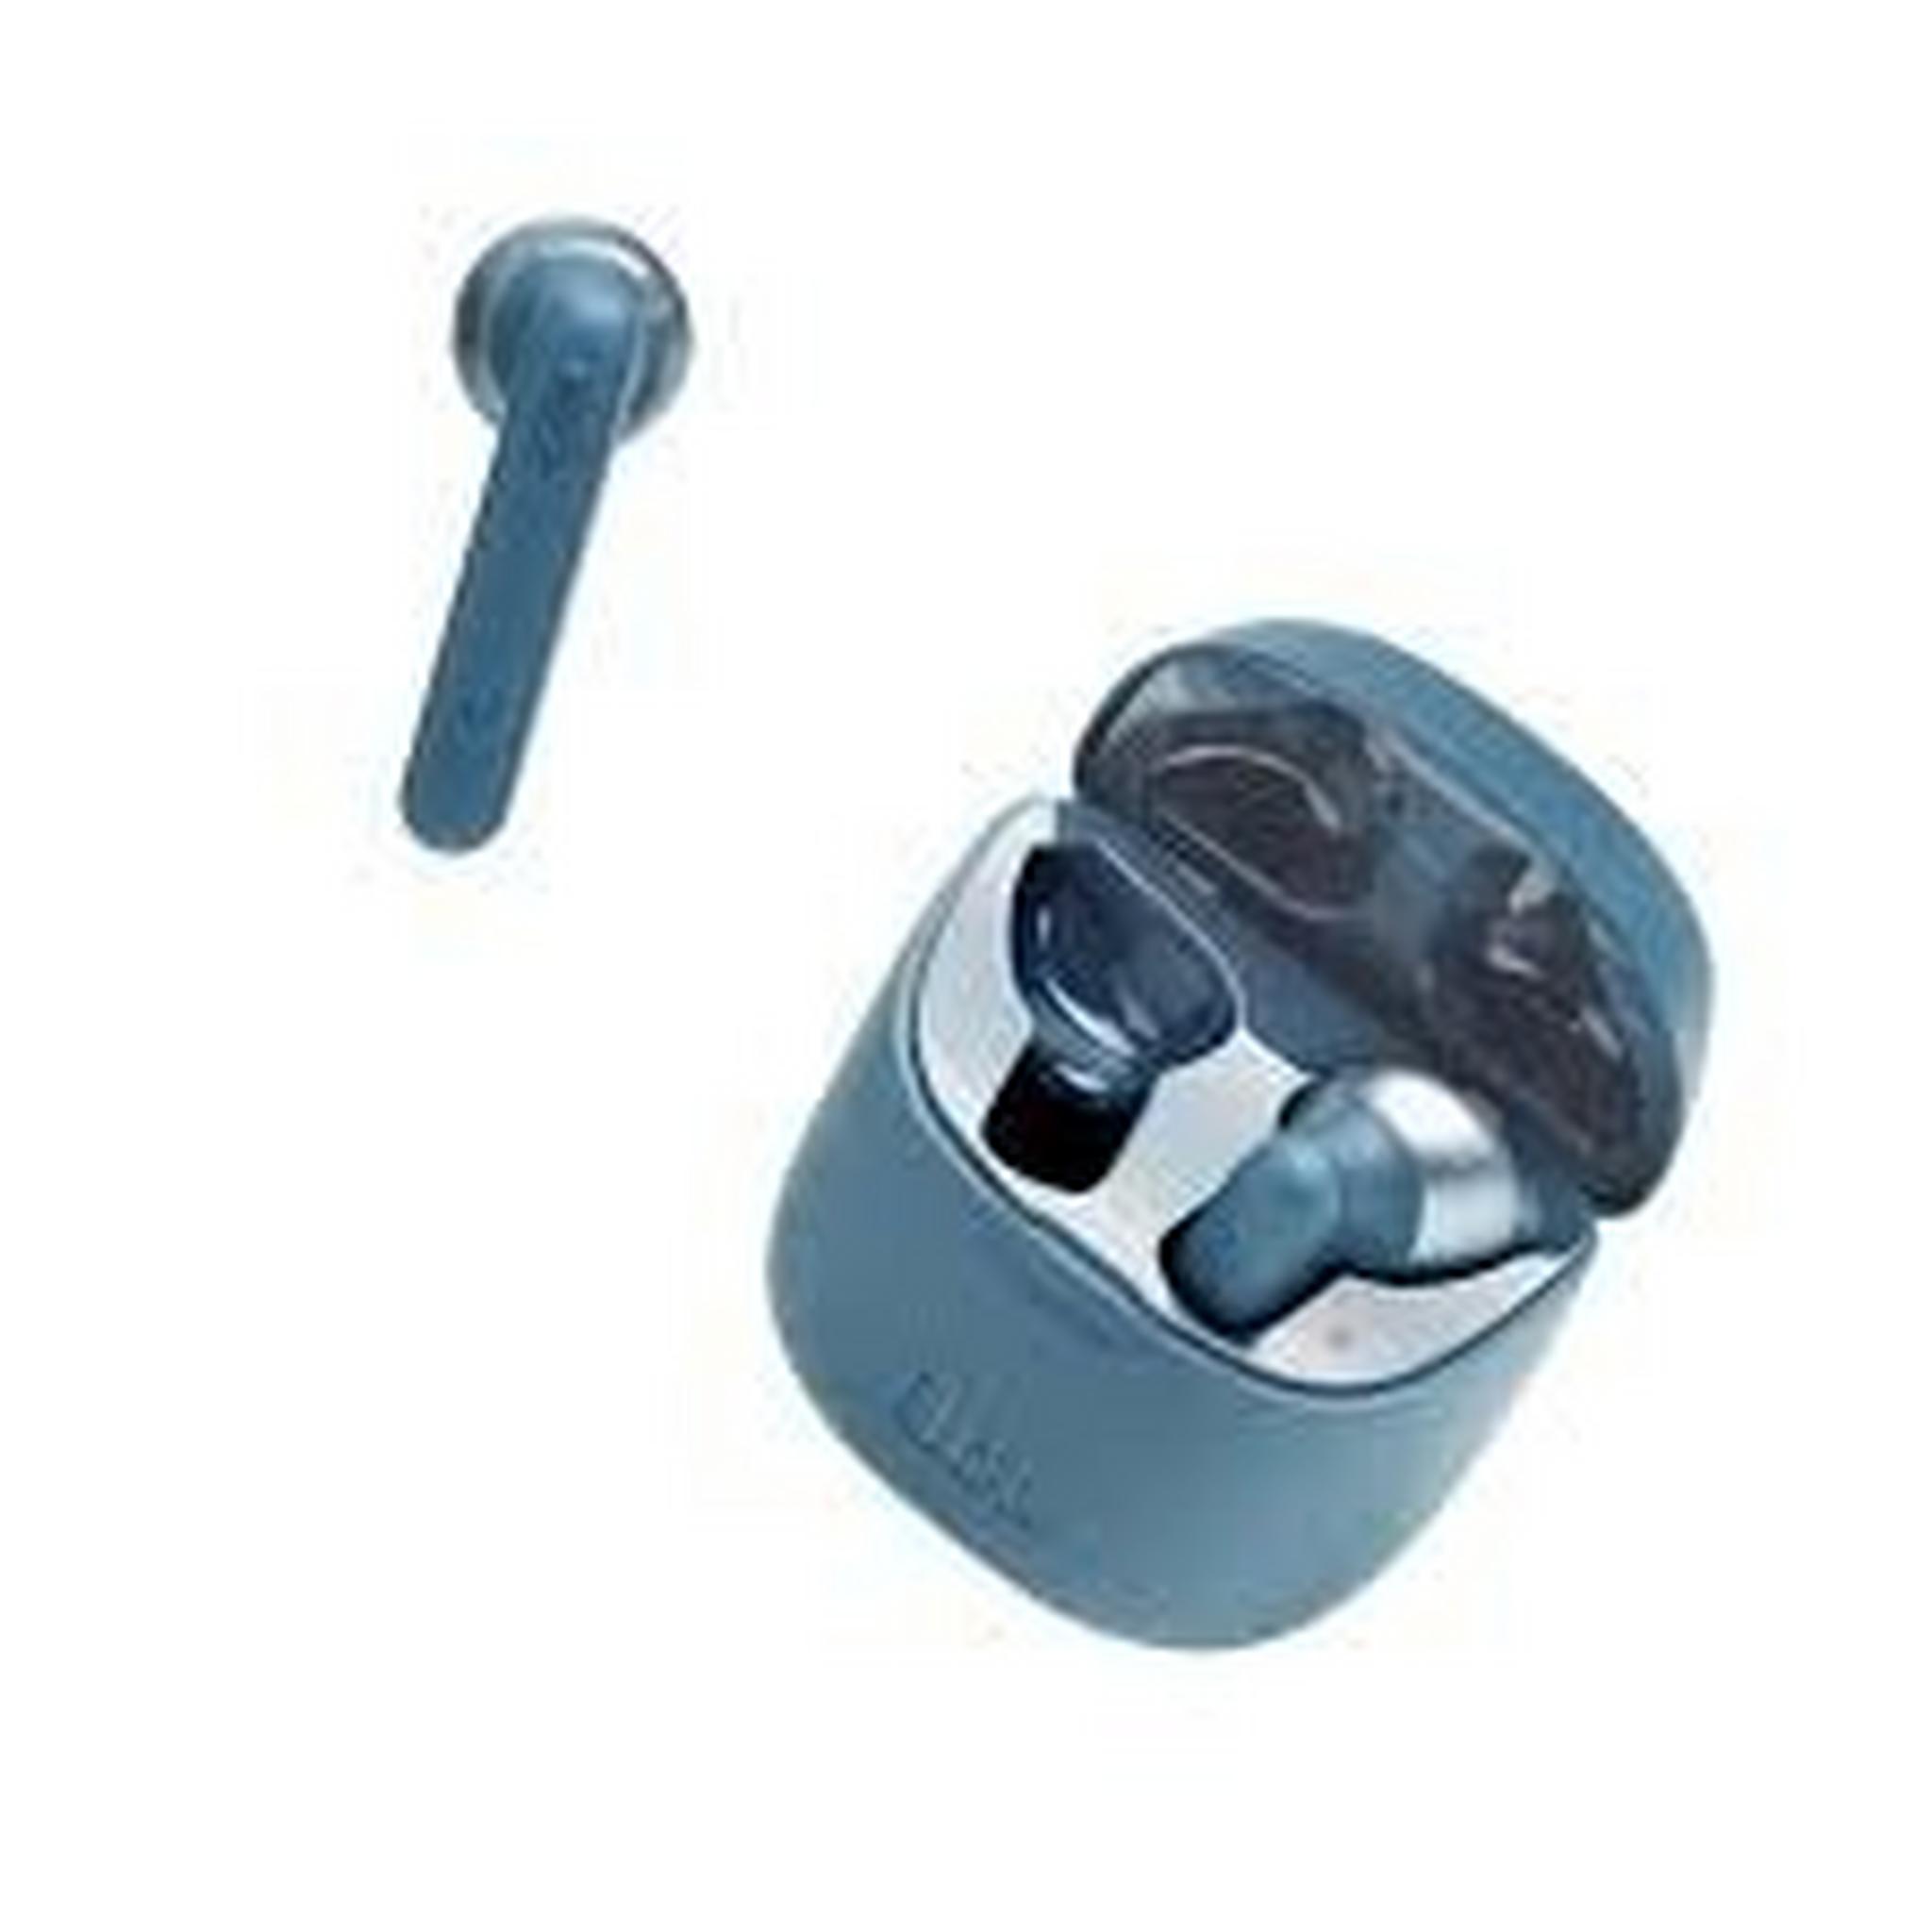 JBL True Wireless Earbuds (JBLT220TWSBLU) - Blue